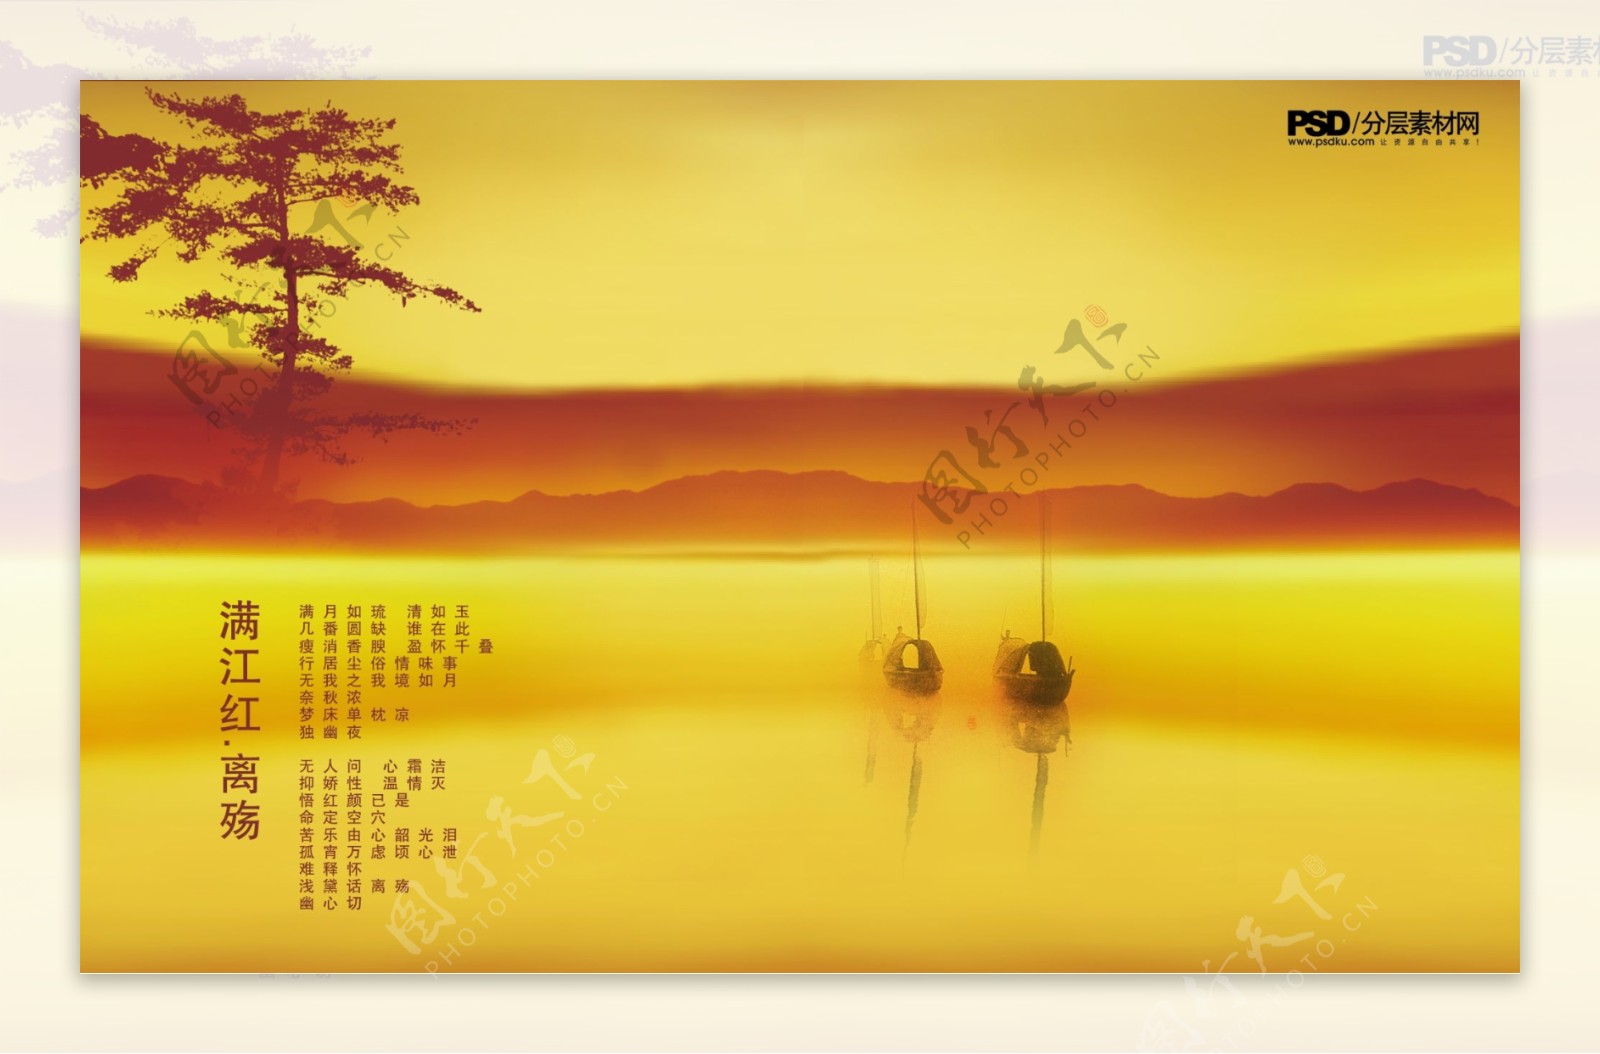 山水背景舞台背景朦胧江河古船封面版式设计中国传统元素